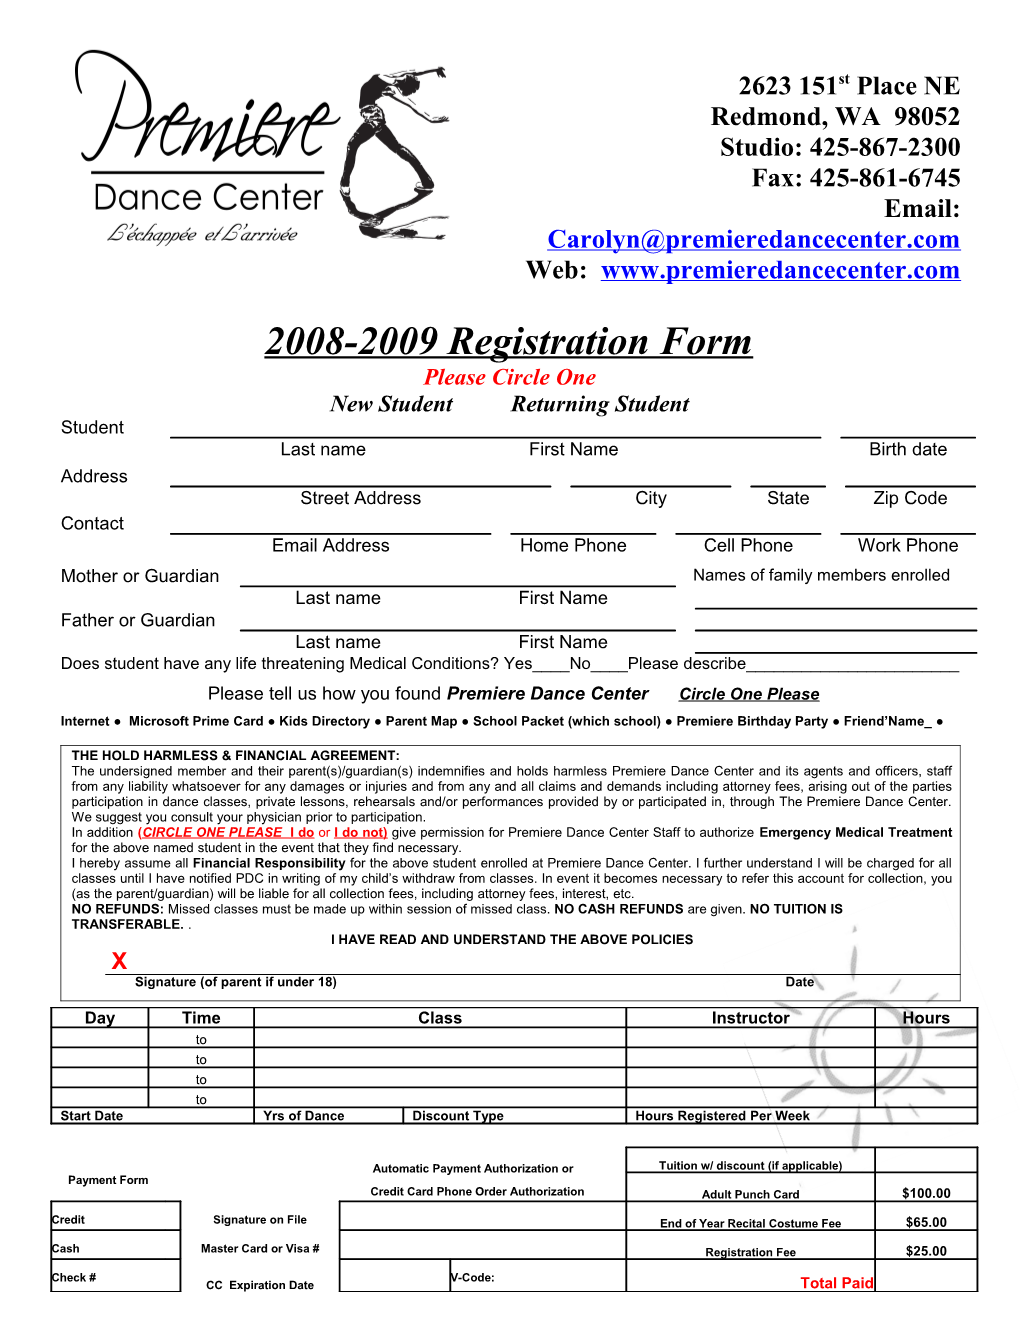 2008-2009 Registration Form